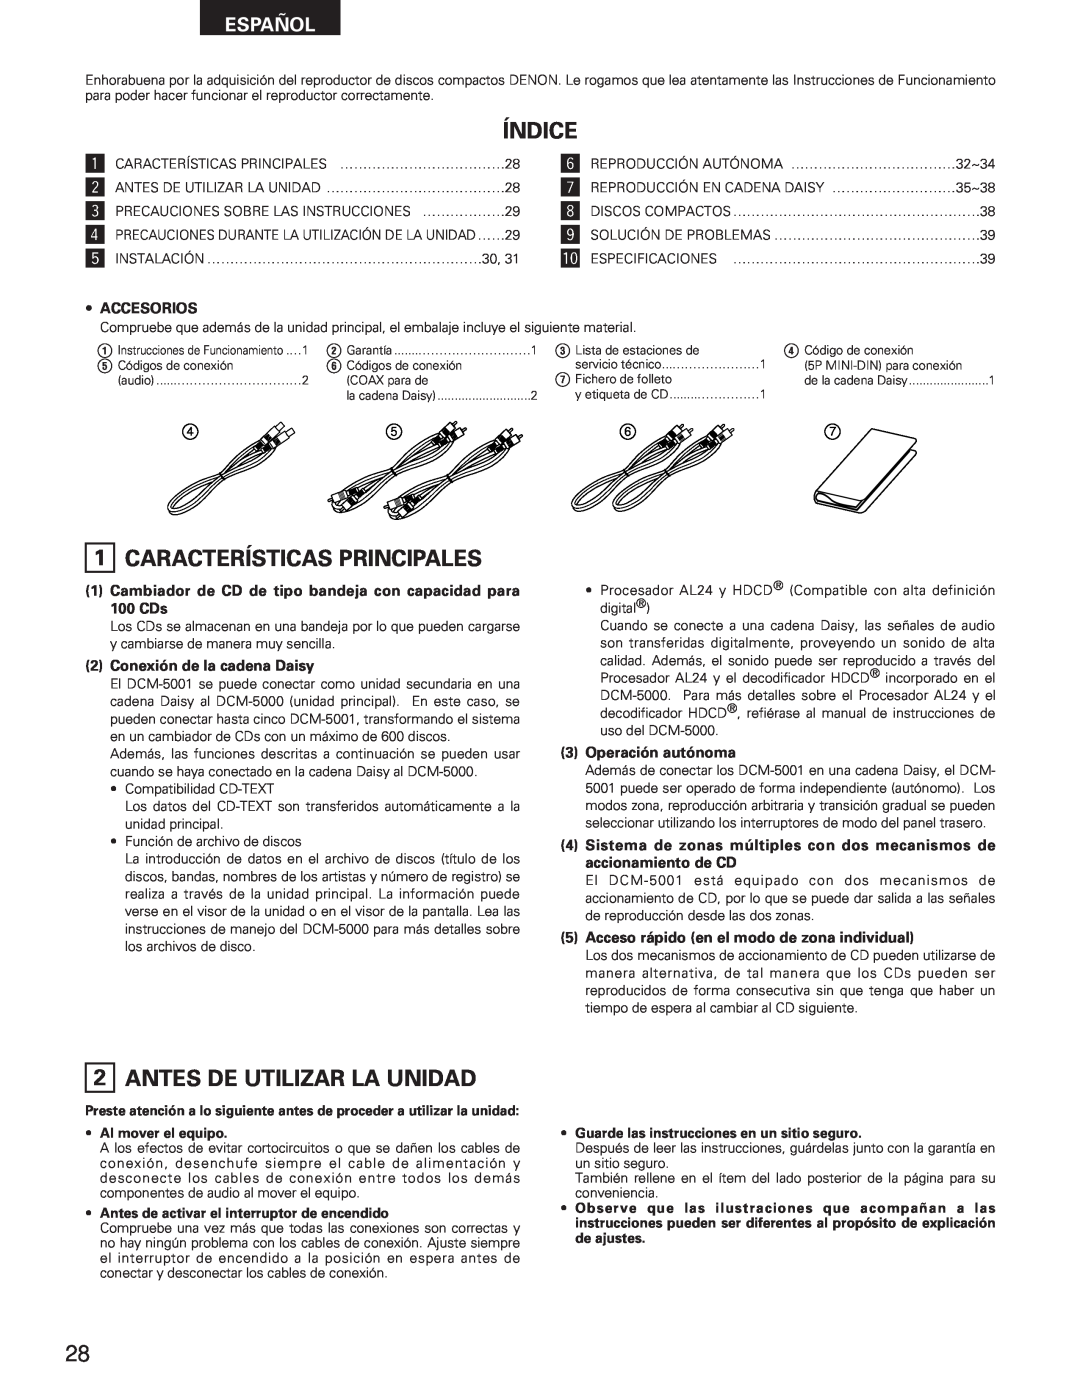 Denon DCM-5001 manual Índice, 1CARACTERÍSTICAS PRINCIPALES, Antes De Utilizar La Unidad, Español, Al mover el equipo 